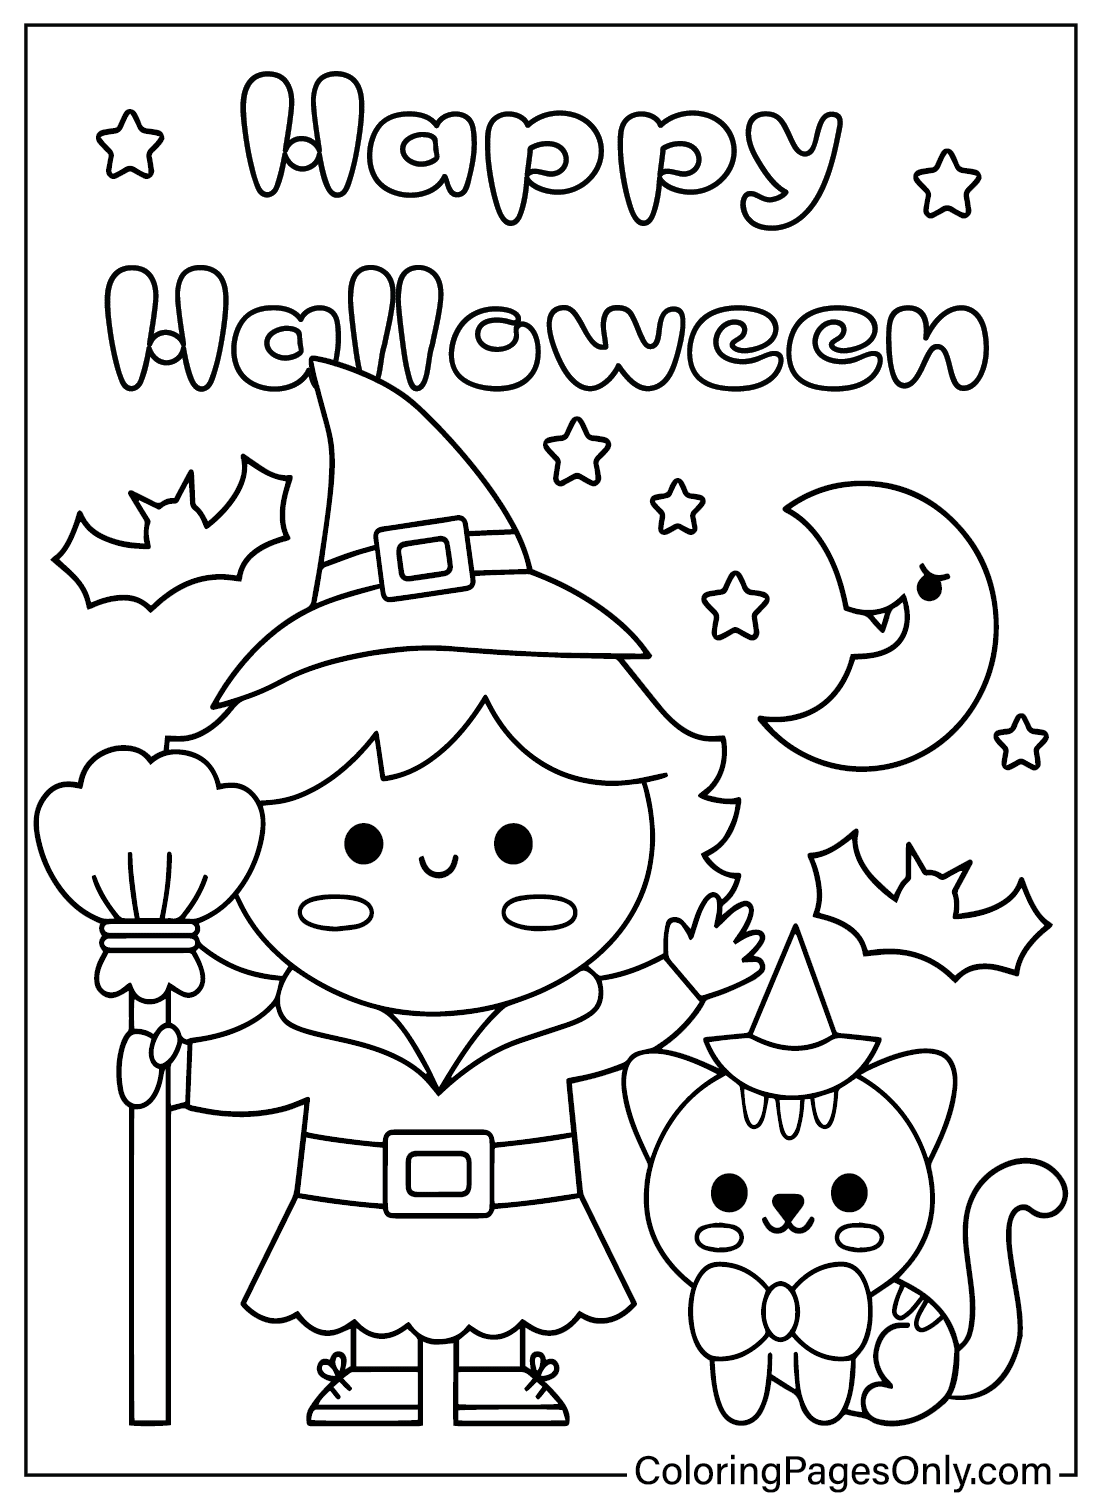 Página para colorear de Kawaii Halloween gratis de Kawaii Halloween